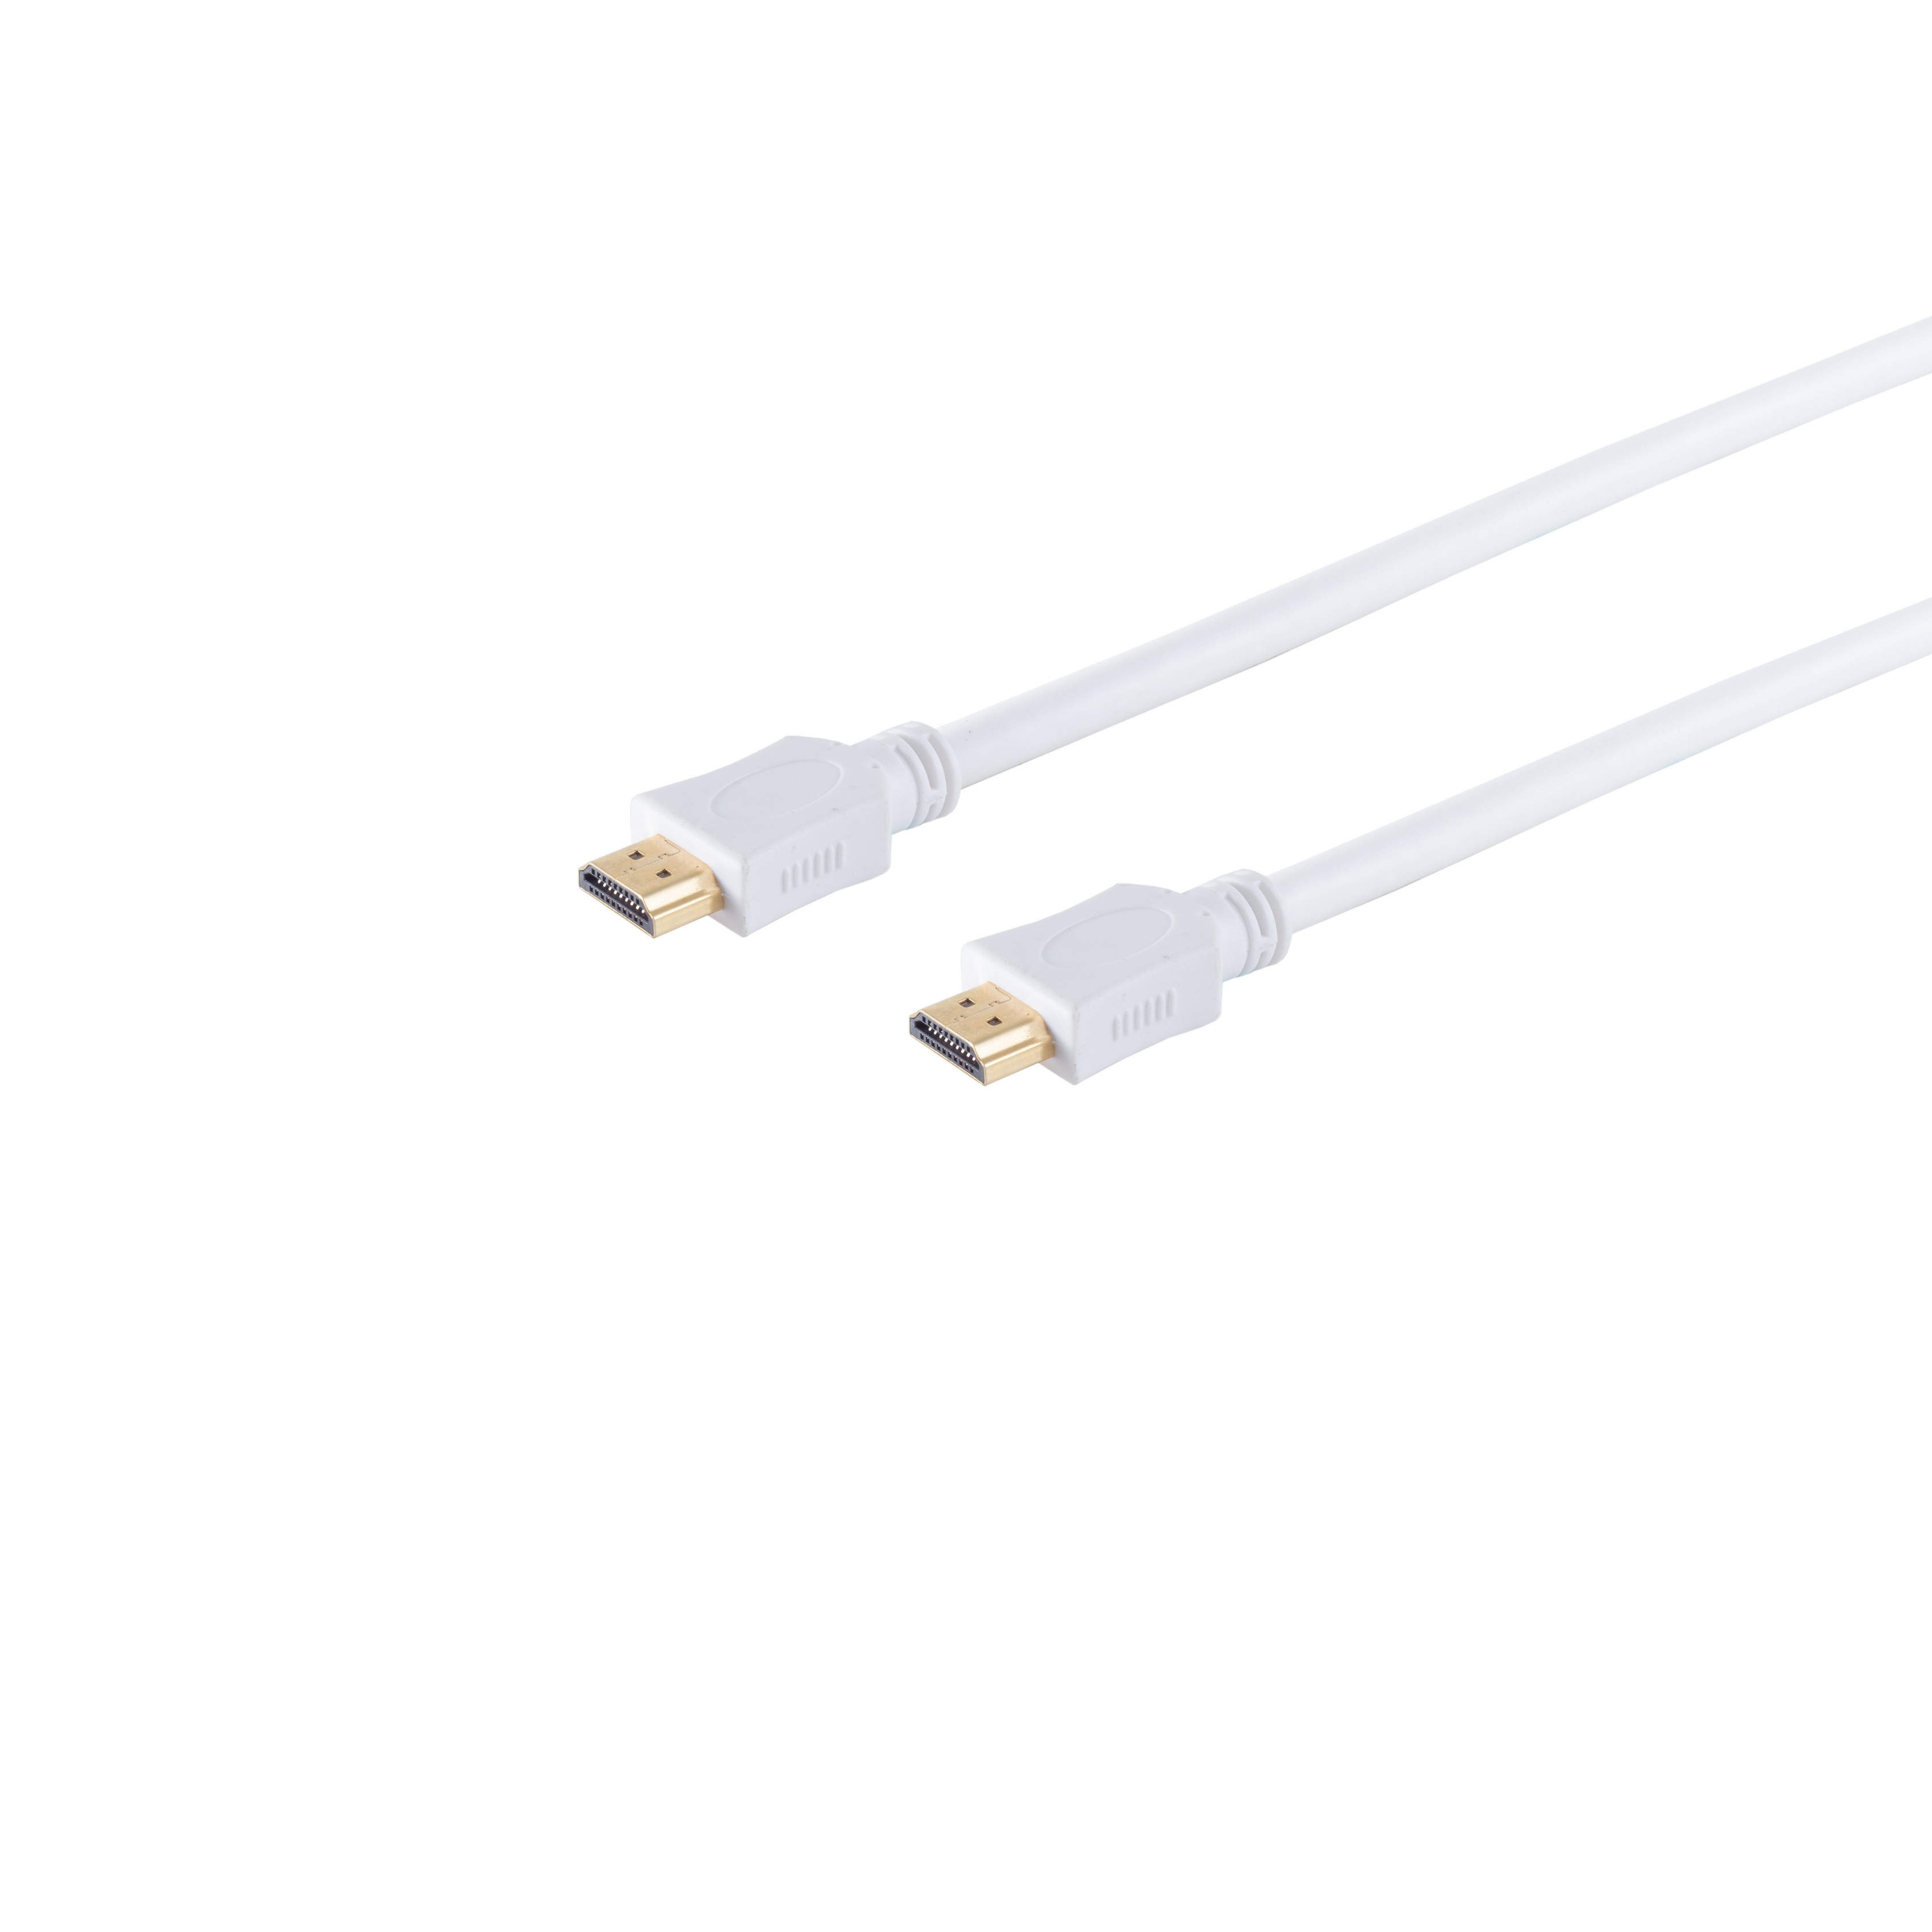 S/CONN MAXIMUM weiß A-Stecker HDMI 3m HEAC verg. HDMI Kabel CONNECTIVITY A-Stecker/HDMI